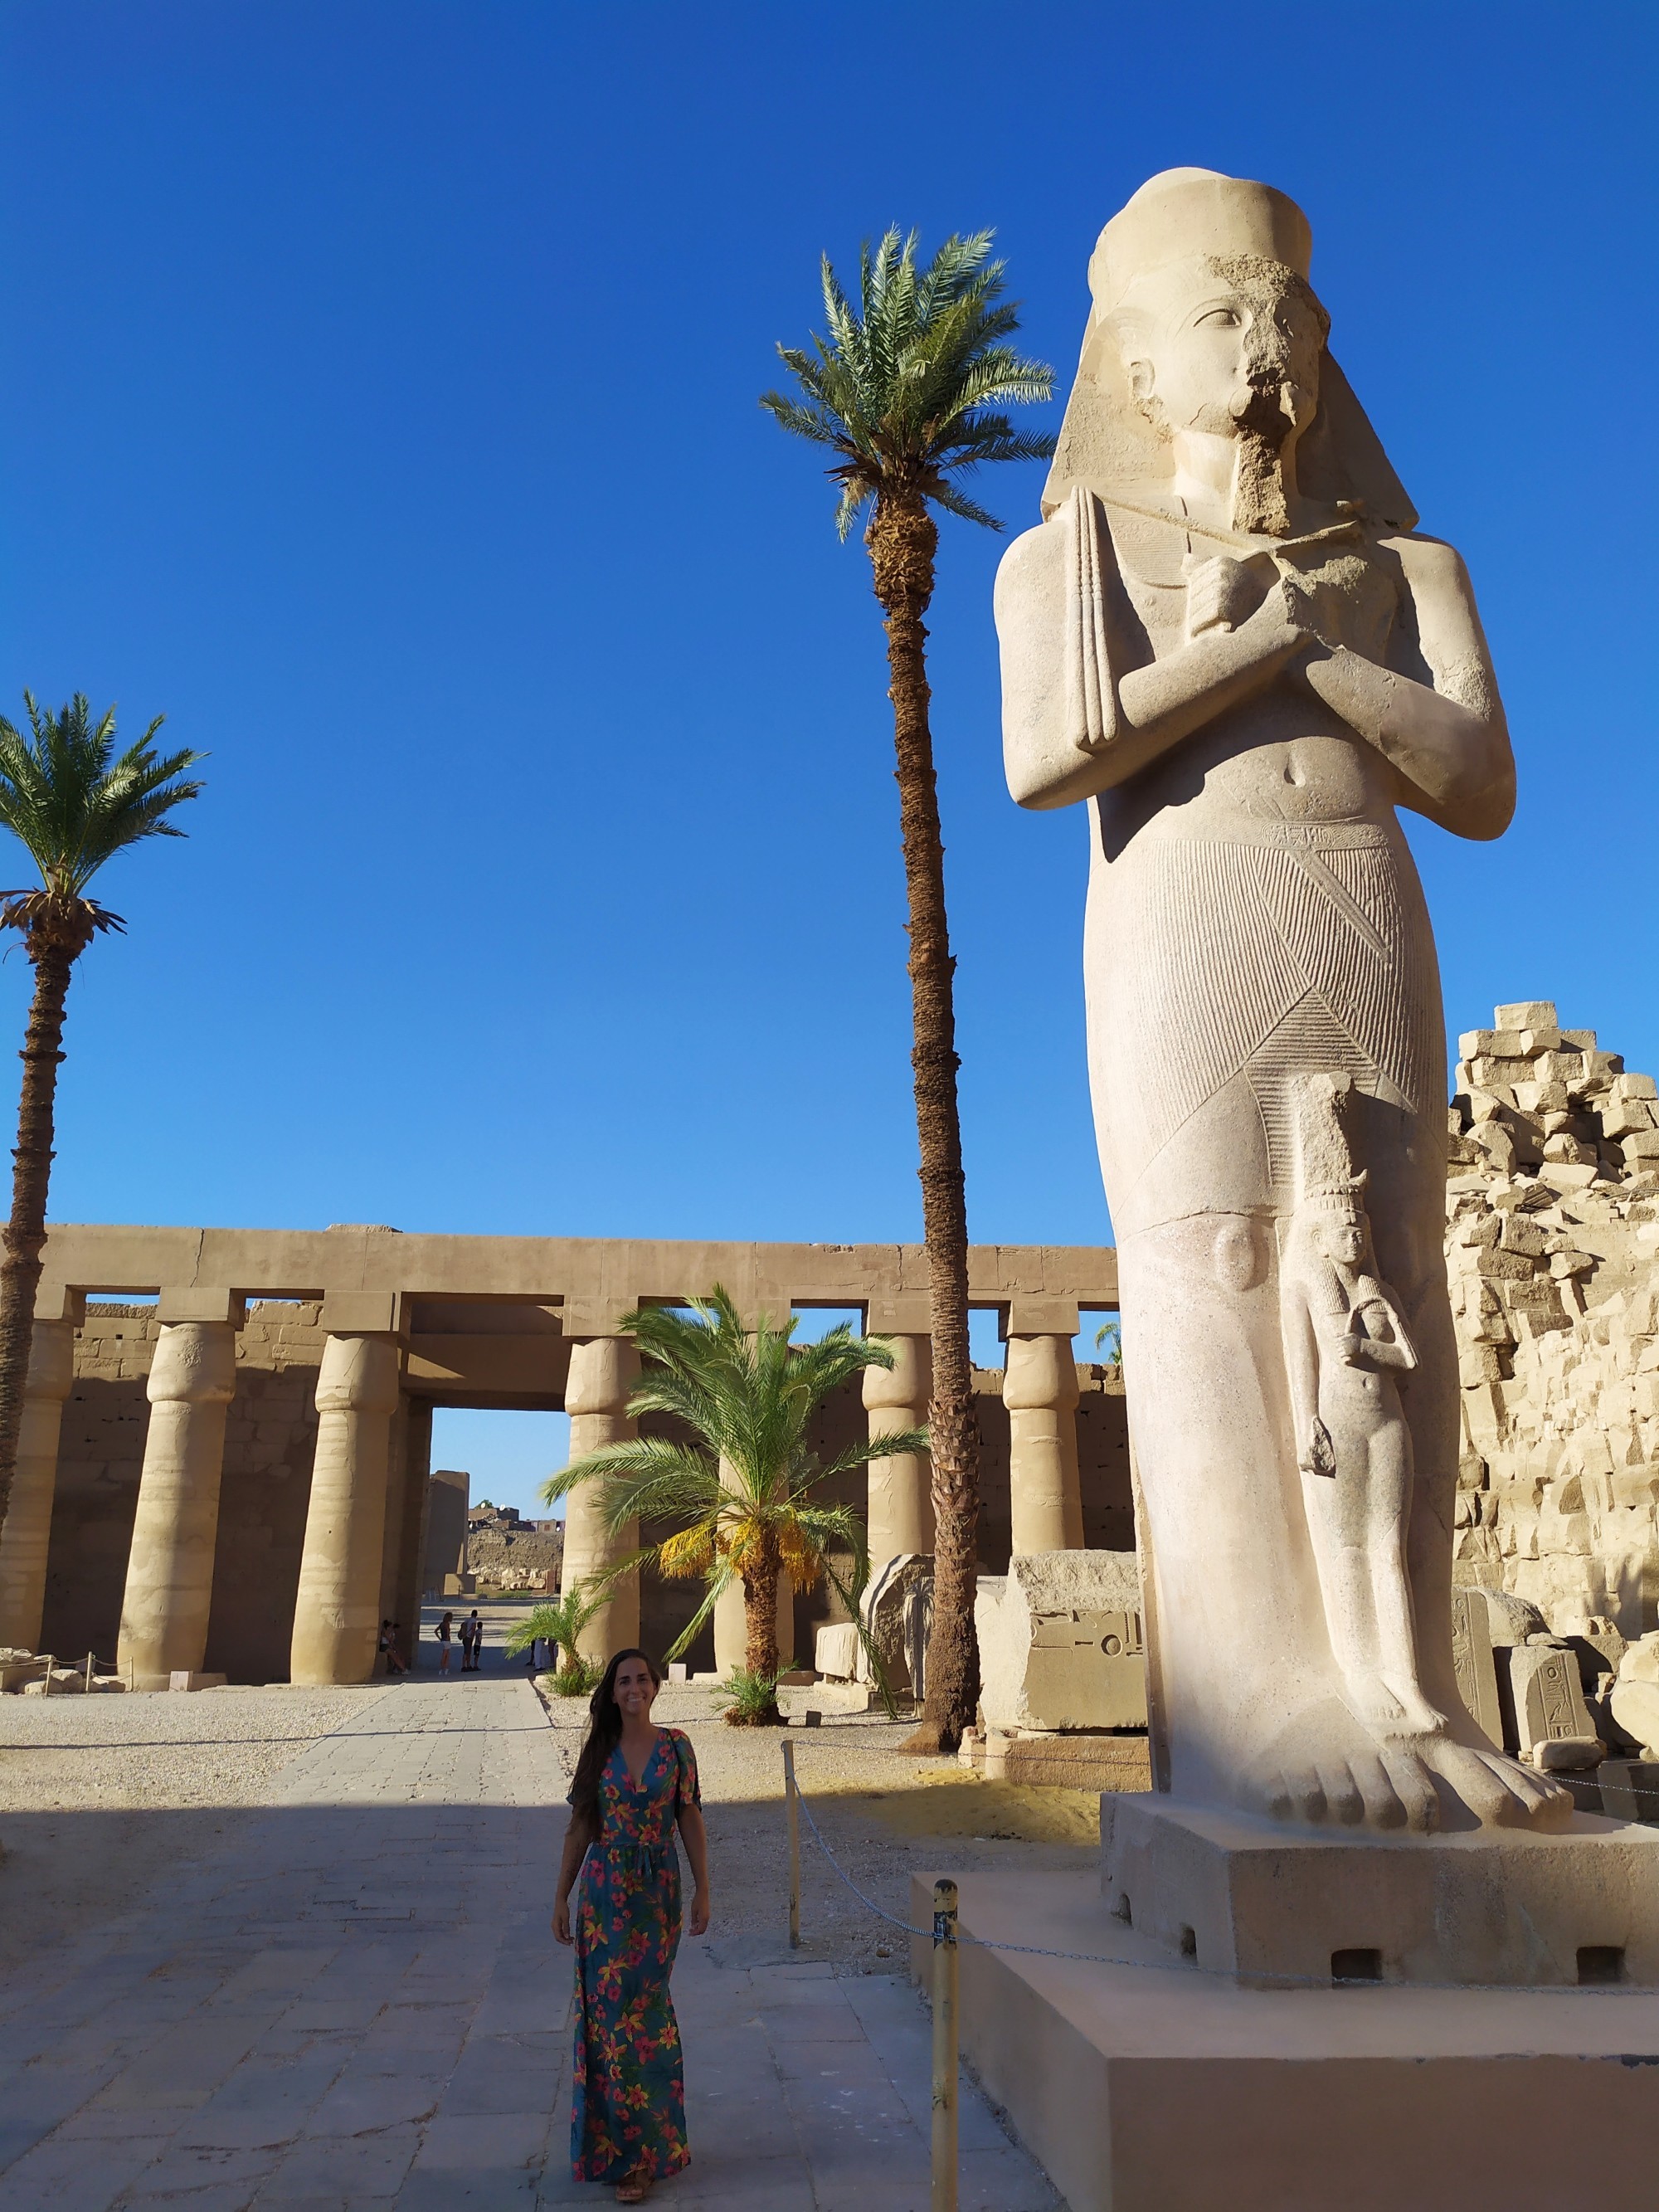 Karnak, Egypt